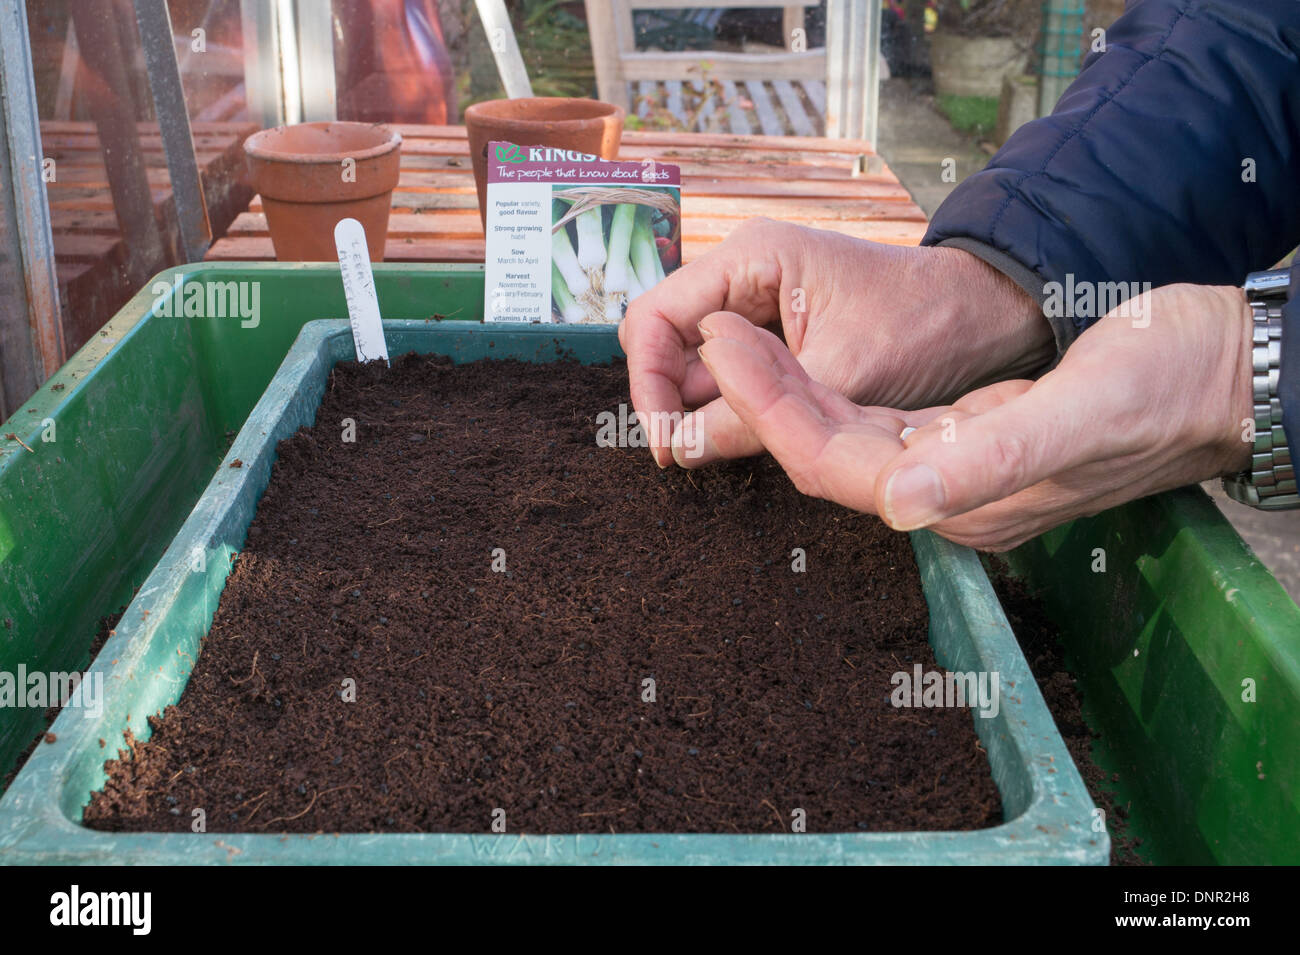 Giardiniere amatoriale la semina di semi di porro in un vassoio di seme all'interno di una serra Foto Stock